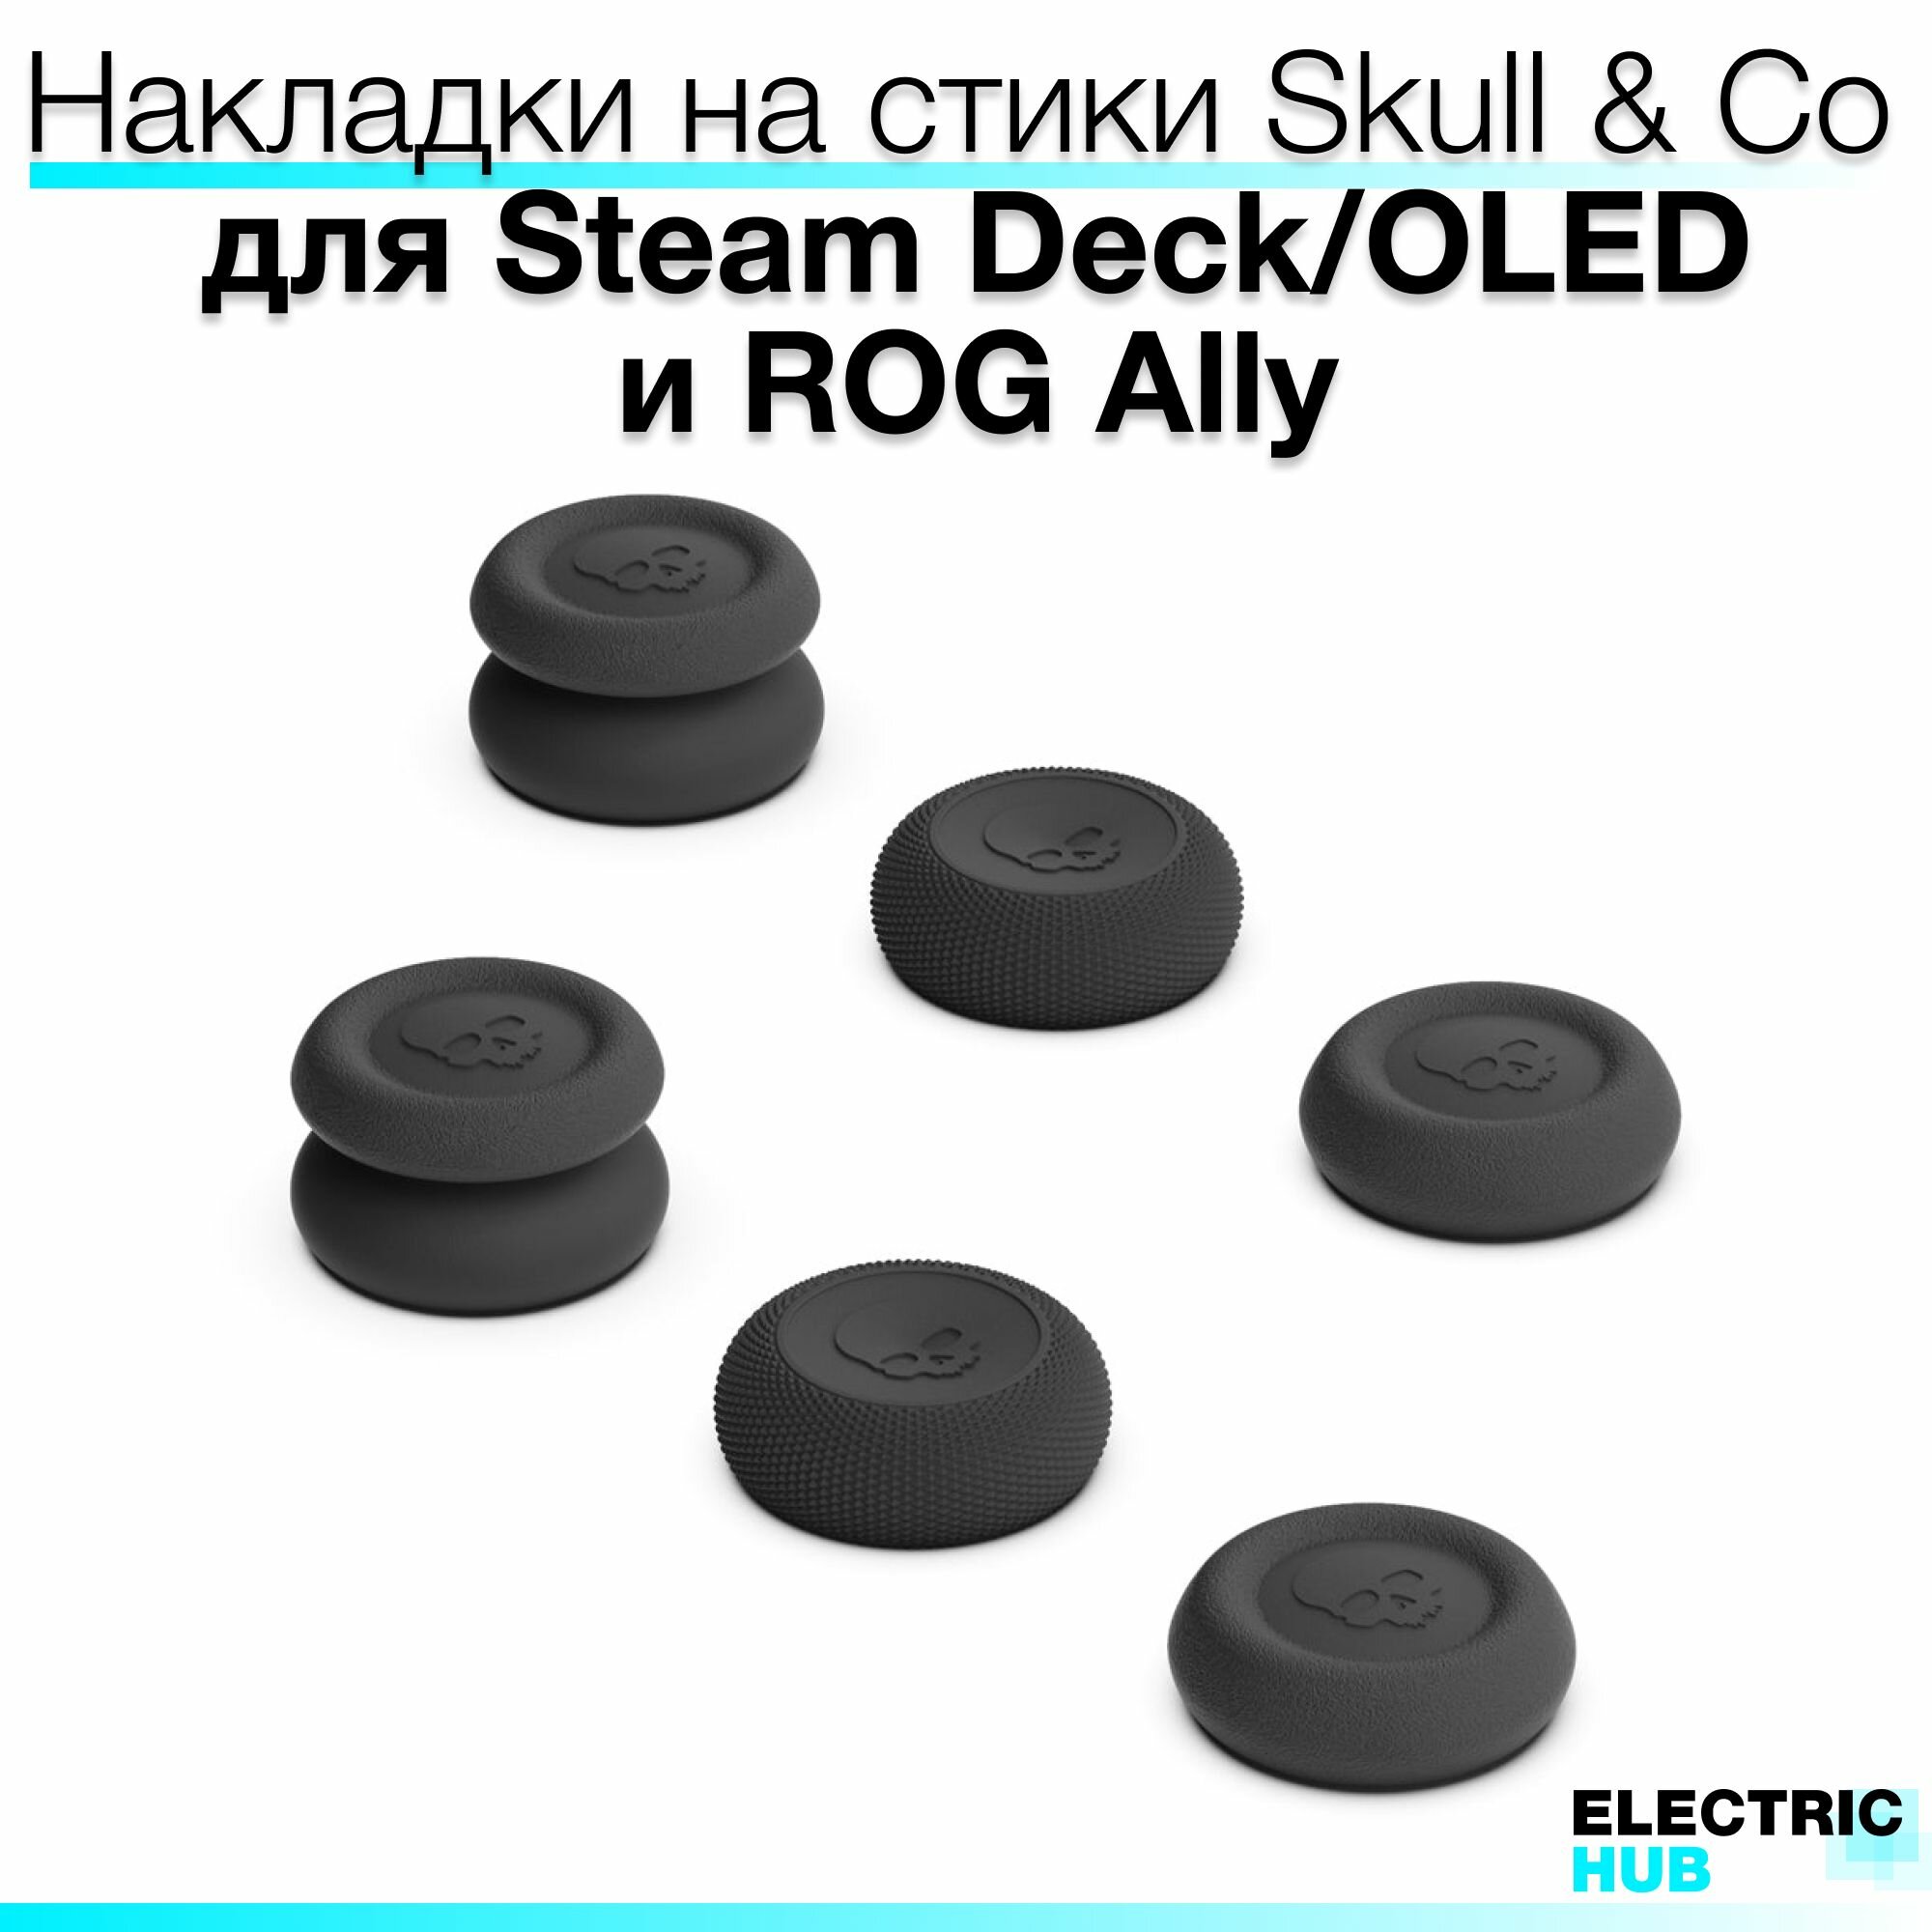 Премиум накладки Skull & Co на стики для консолей Steam Deck/OLED/ROG Ally комплект из 6 штук цвет Черный (Black)